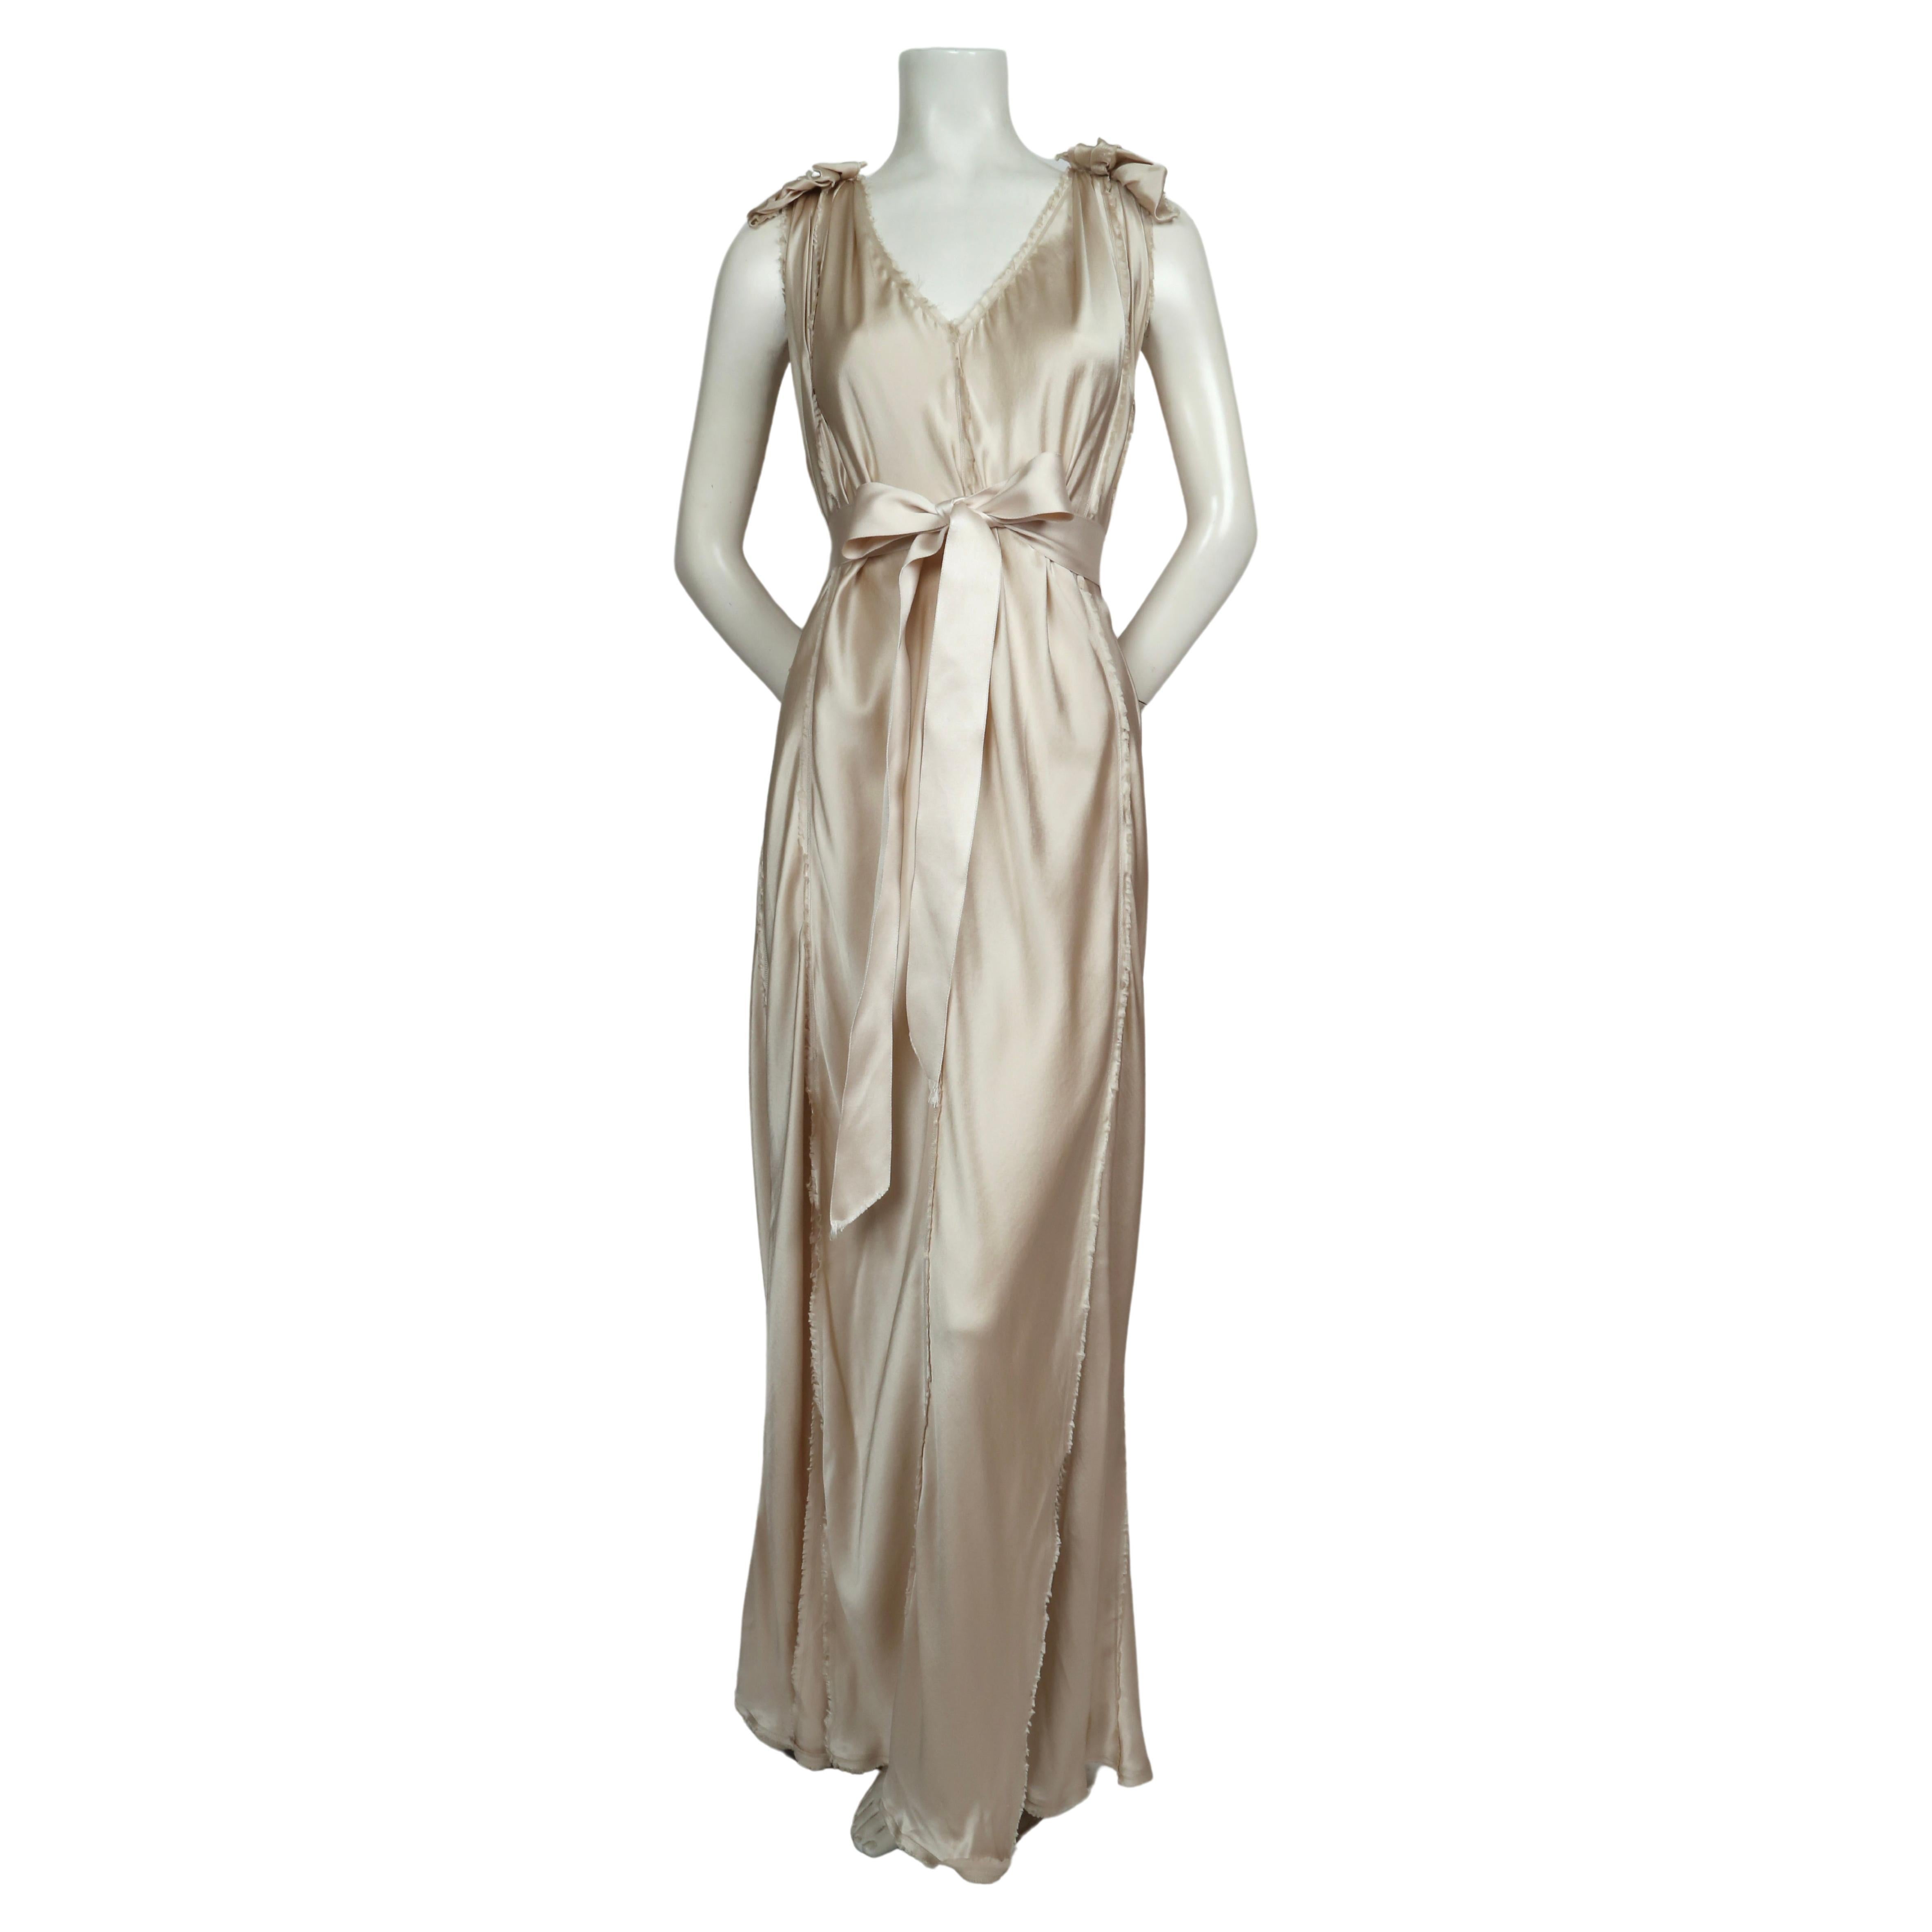 Champagner-Seide Hochzeit im griechischen Stil  Kleid, entworfen von Alber Elbaz für Lanvin aus dem Jahr 2008. Französisch Größe 36, aber es gibt eine gewisse Flexibilität in der Größe aufgrund der schrägen Schnitt der Platten.  Absichtlich